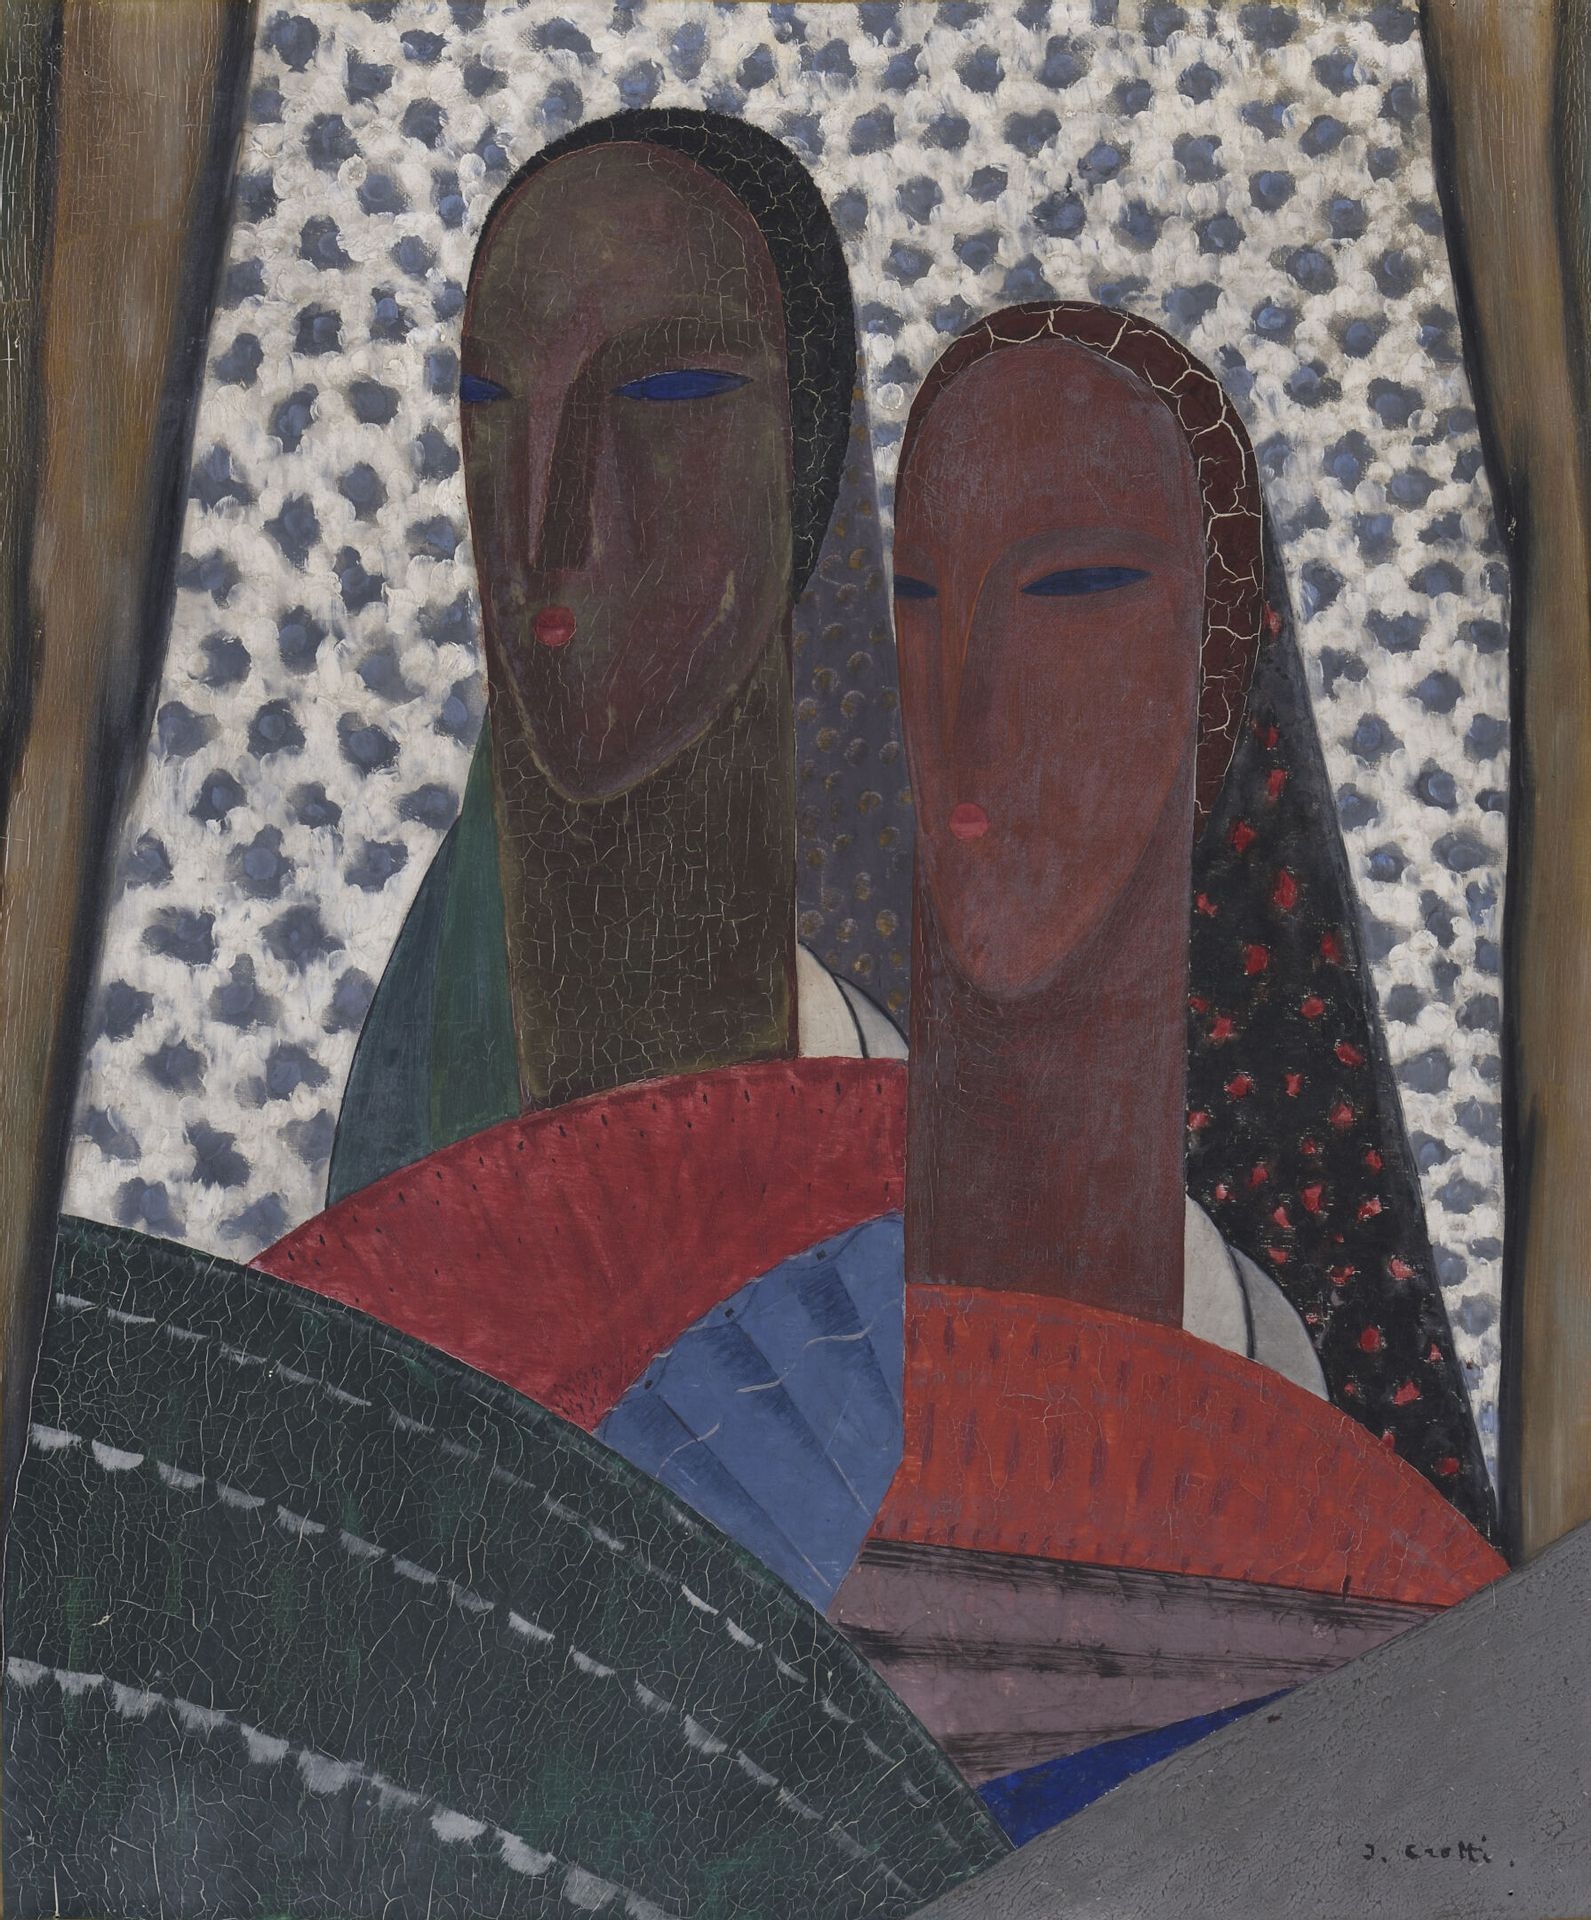 Two Women by Jean Crotti, 1923